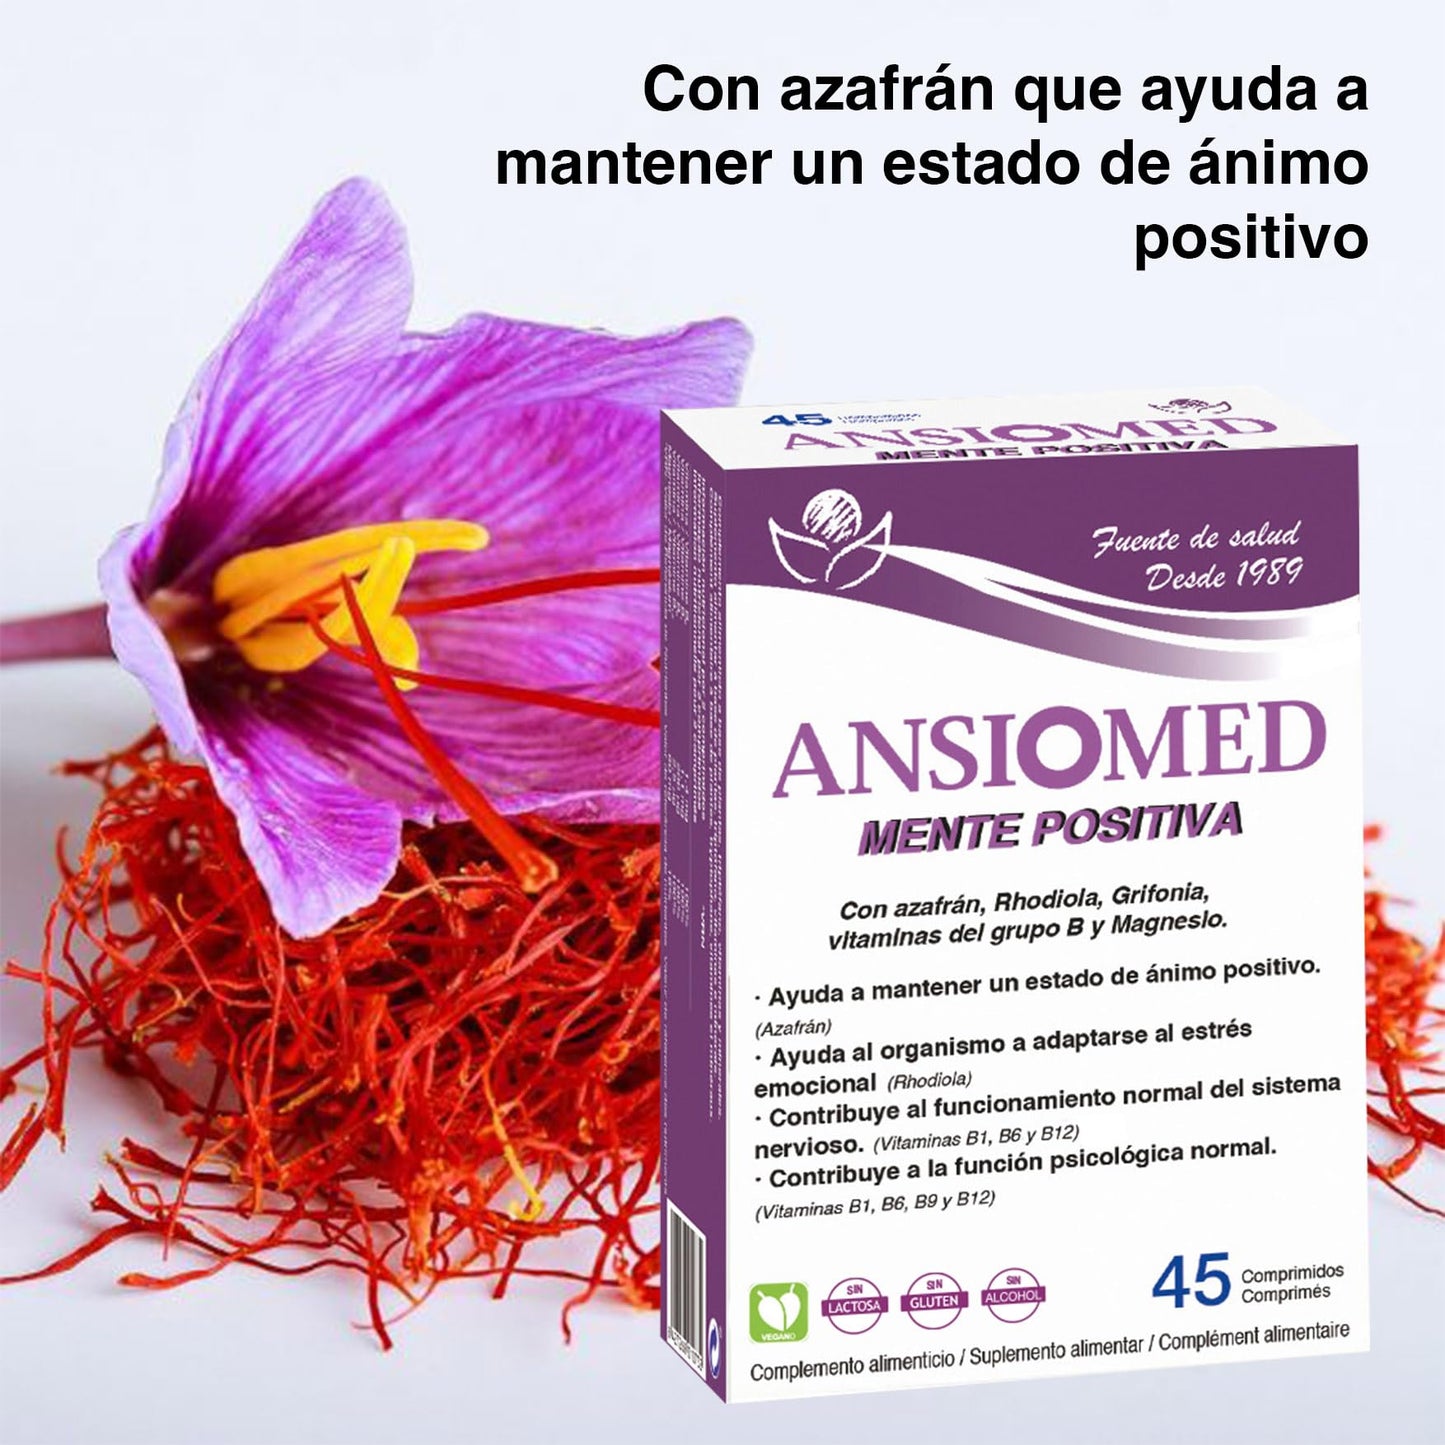 Bioserum ANSIOMED Mente Positiva - 45 comprimidos | Complemento alimenticio con azafrán, rhodiola, griffonia, vitaminas y magnesio | Ayuda a mantener un estado de ánimo positivo